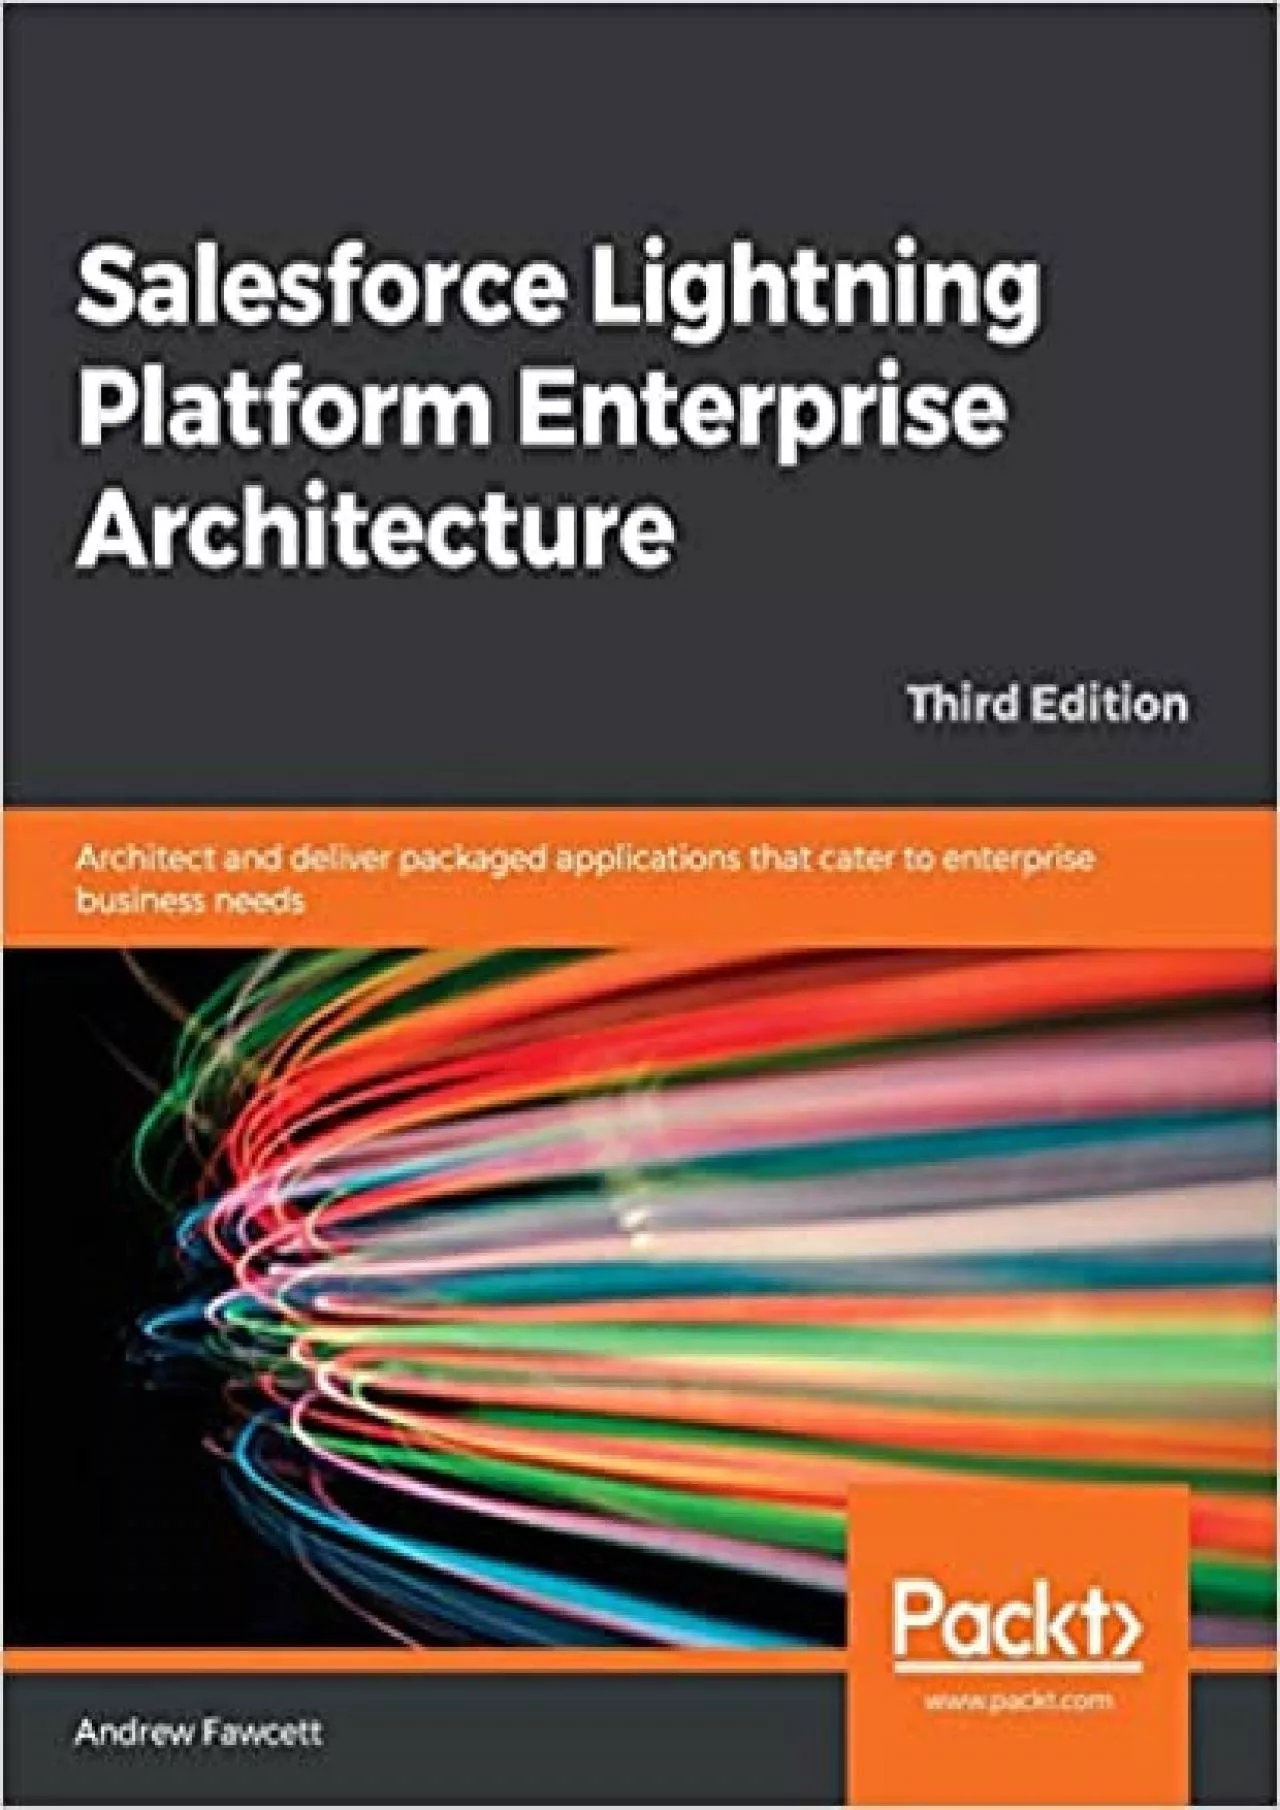 Salesforce Lightning Platform Enterprise Architecture: Architect and deliver packaged